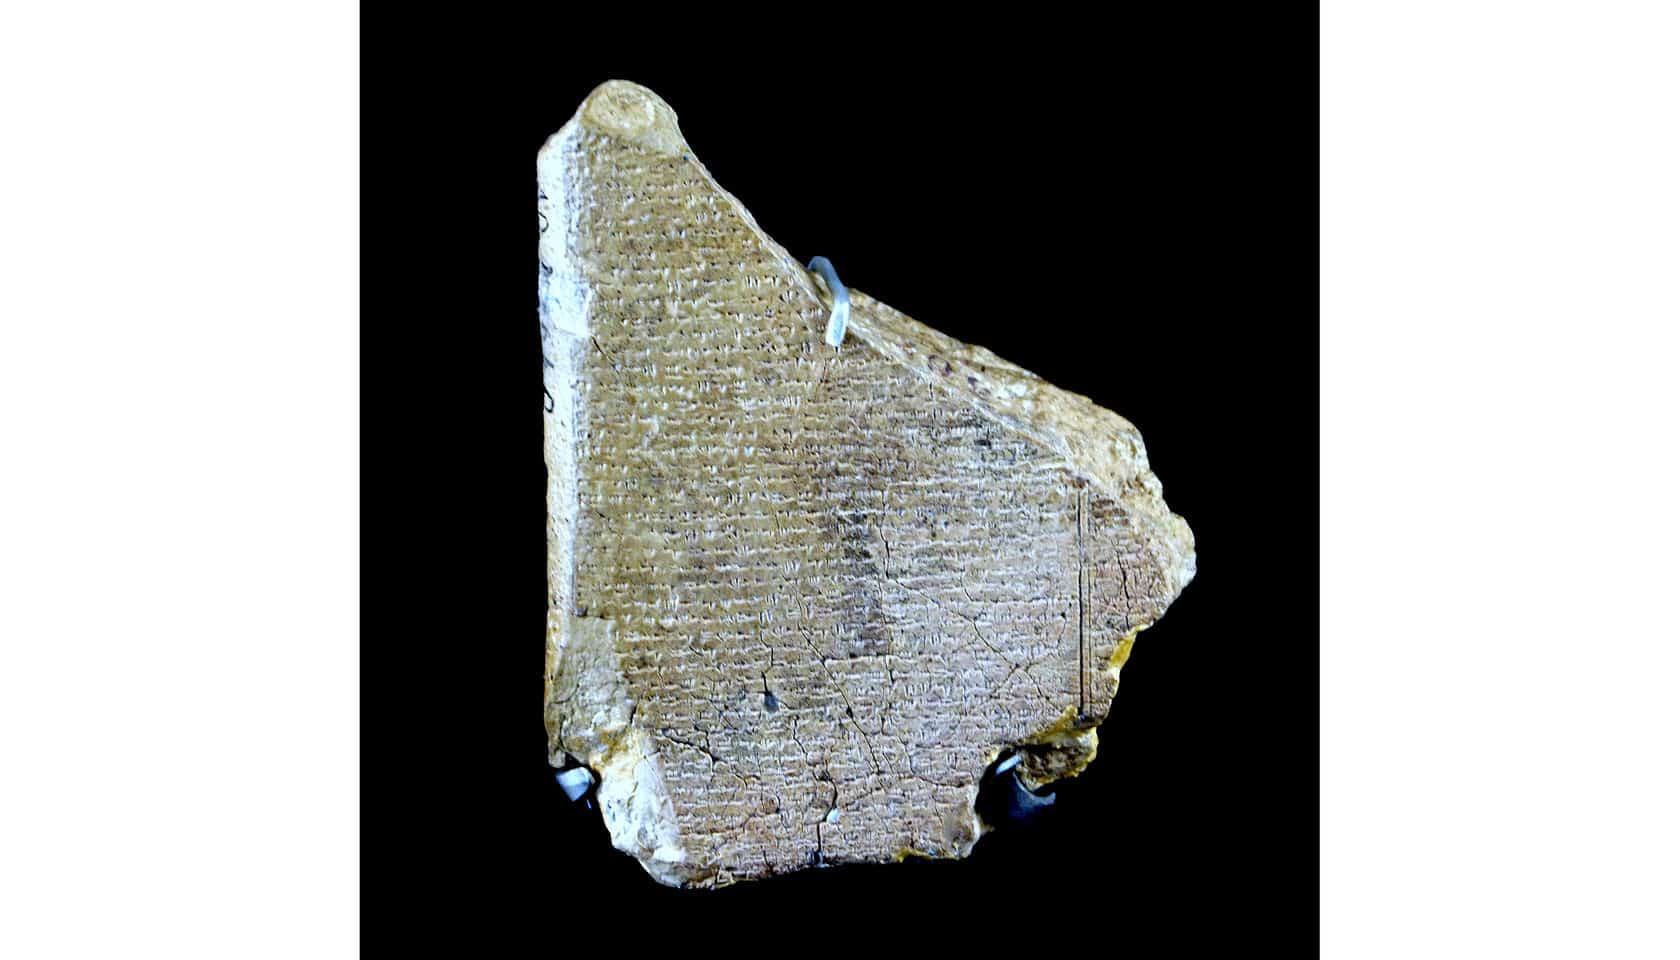 Клинописные таблички из исчезнувшего города Угарит: что открыла нам эта удивительная находка археологов